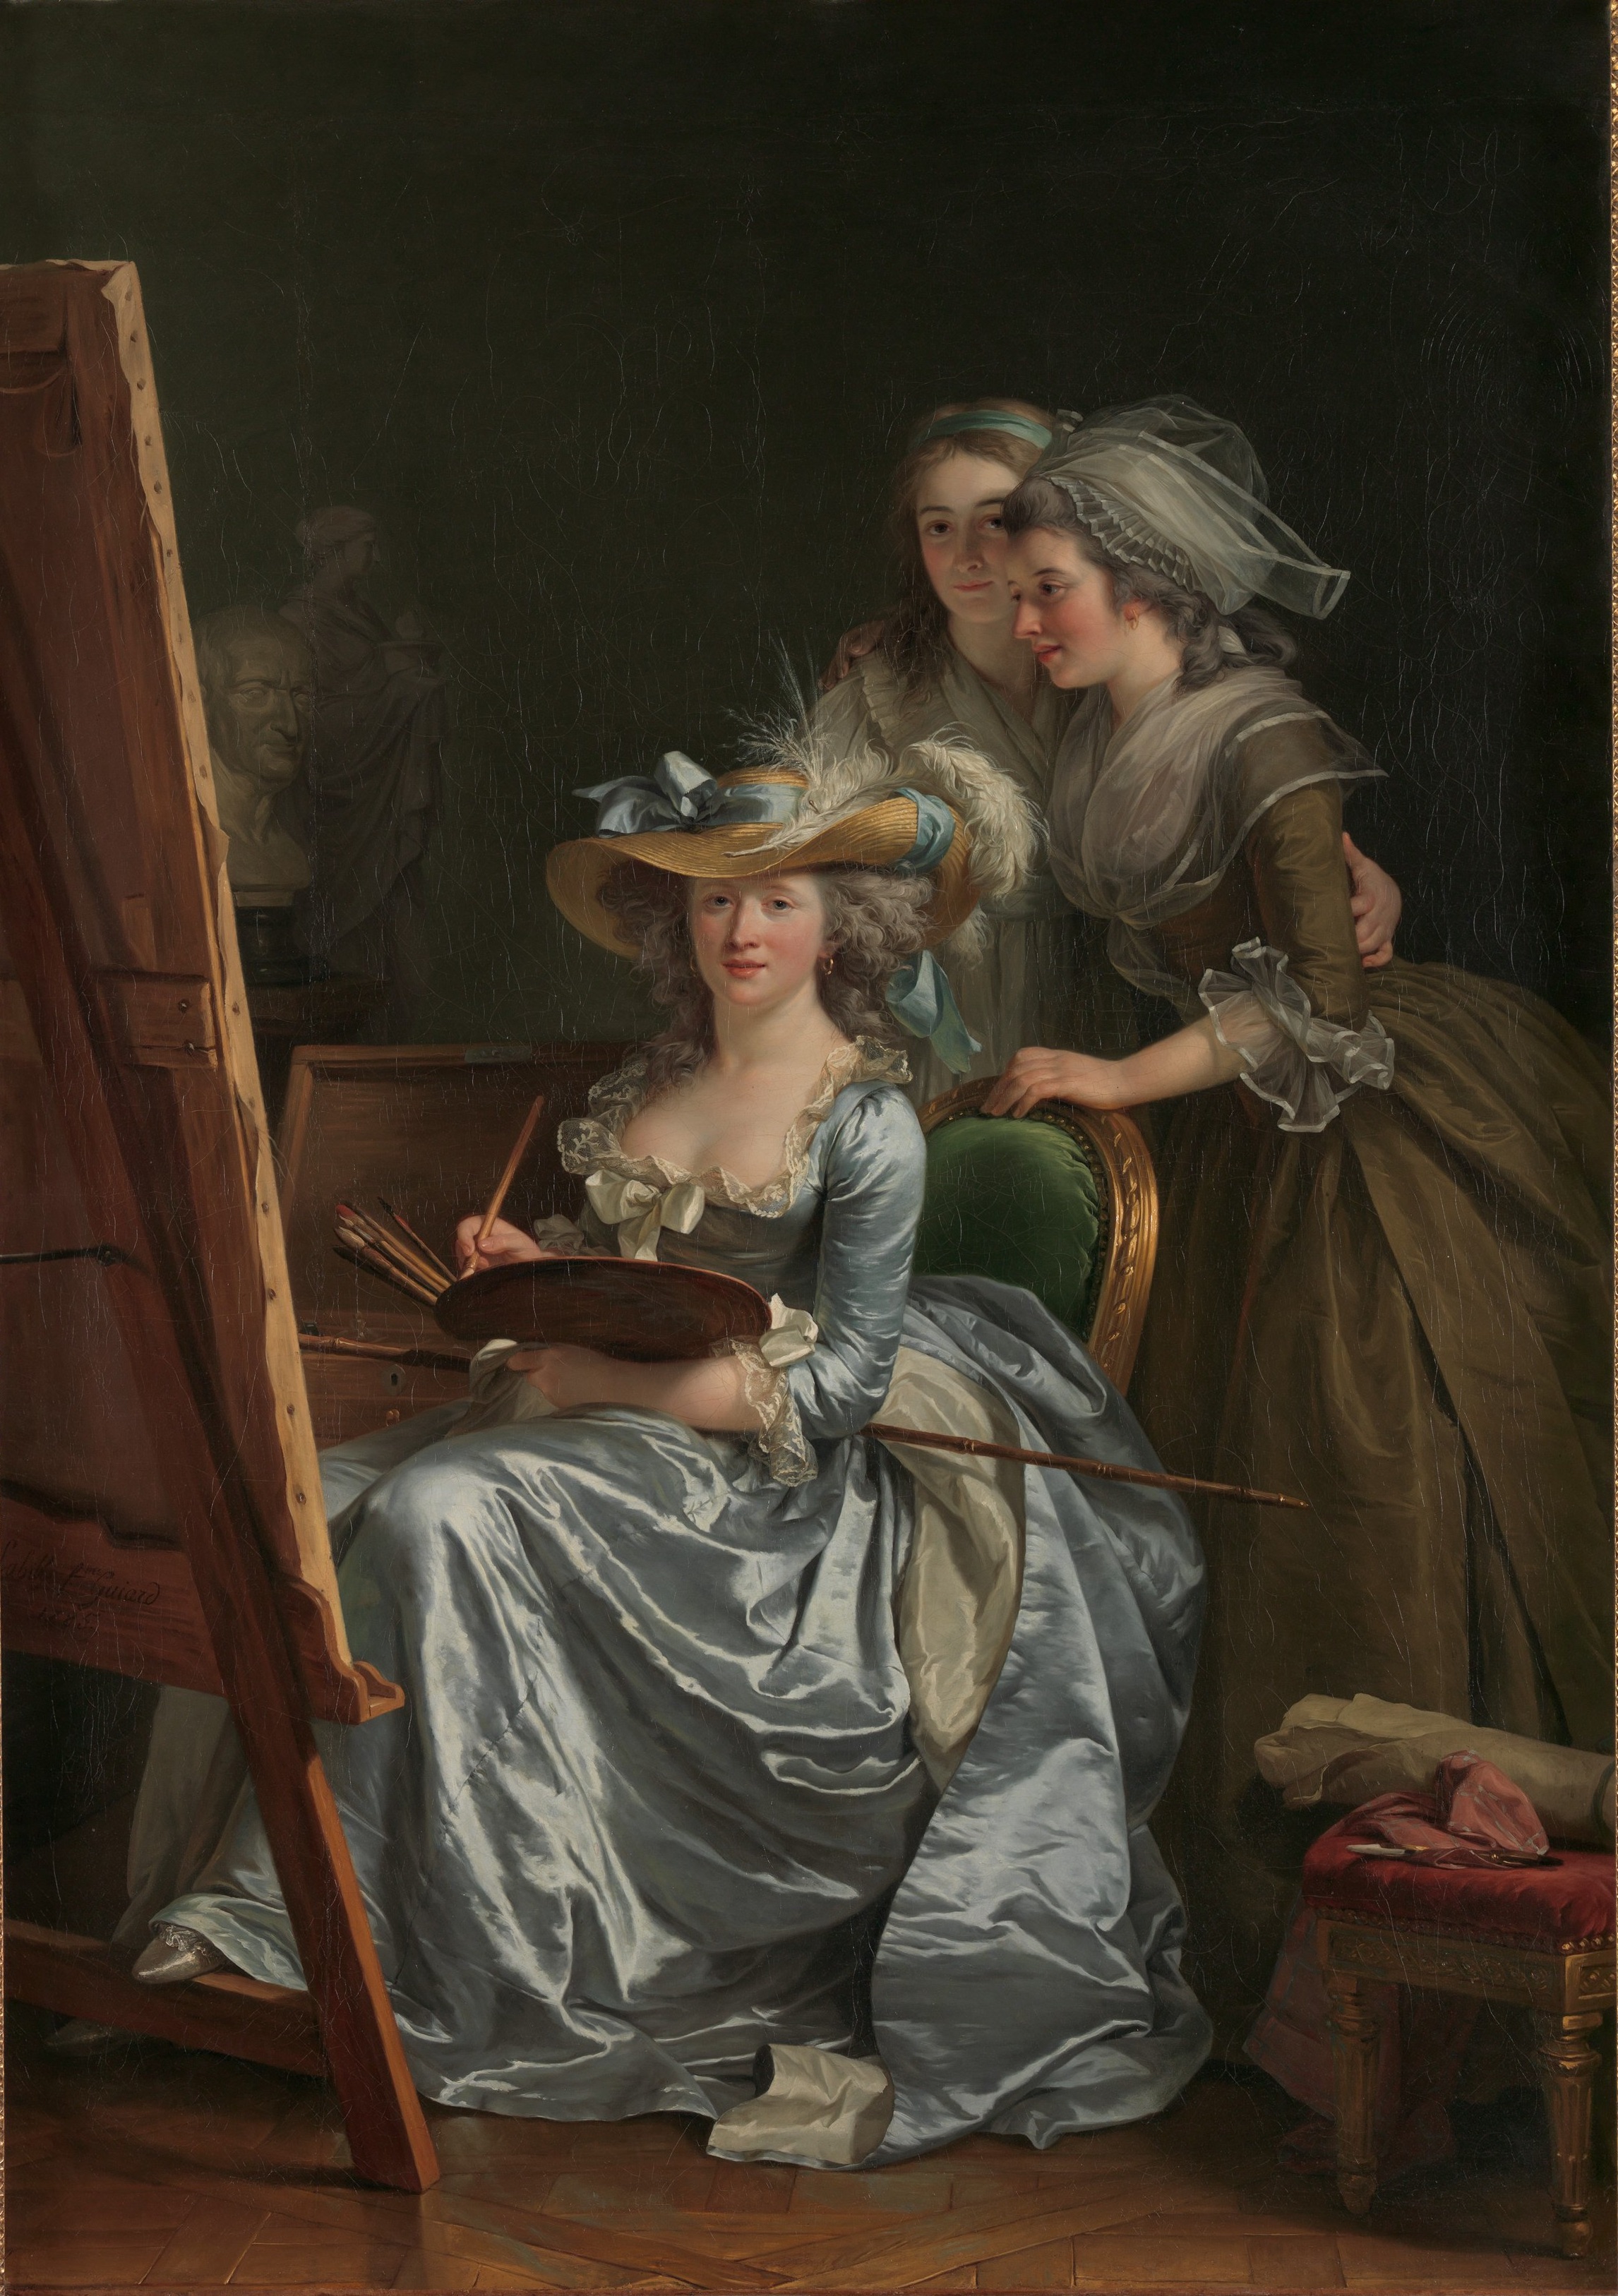 與兩名學生的自畫像 by Adélaïde Labille-Guiard - 1785 年 - 210.8 x 151.1 釐米 